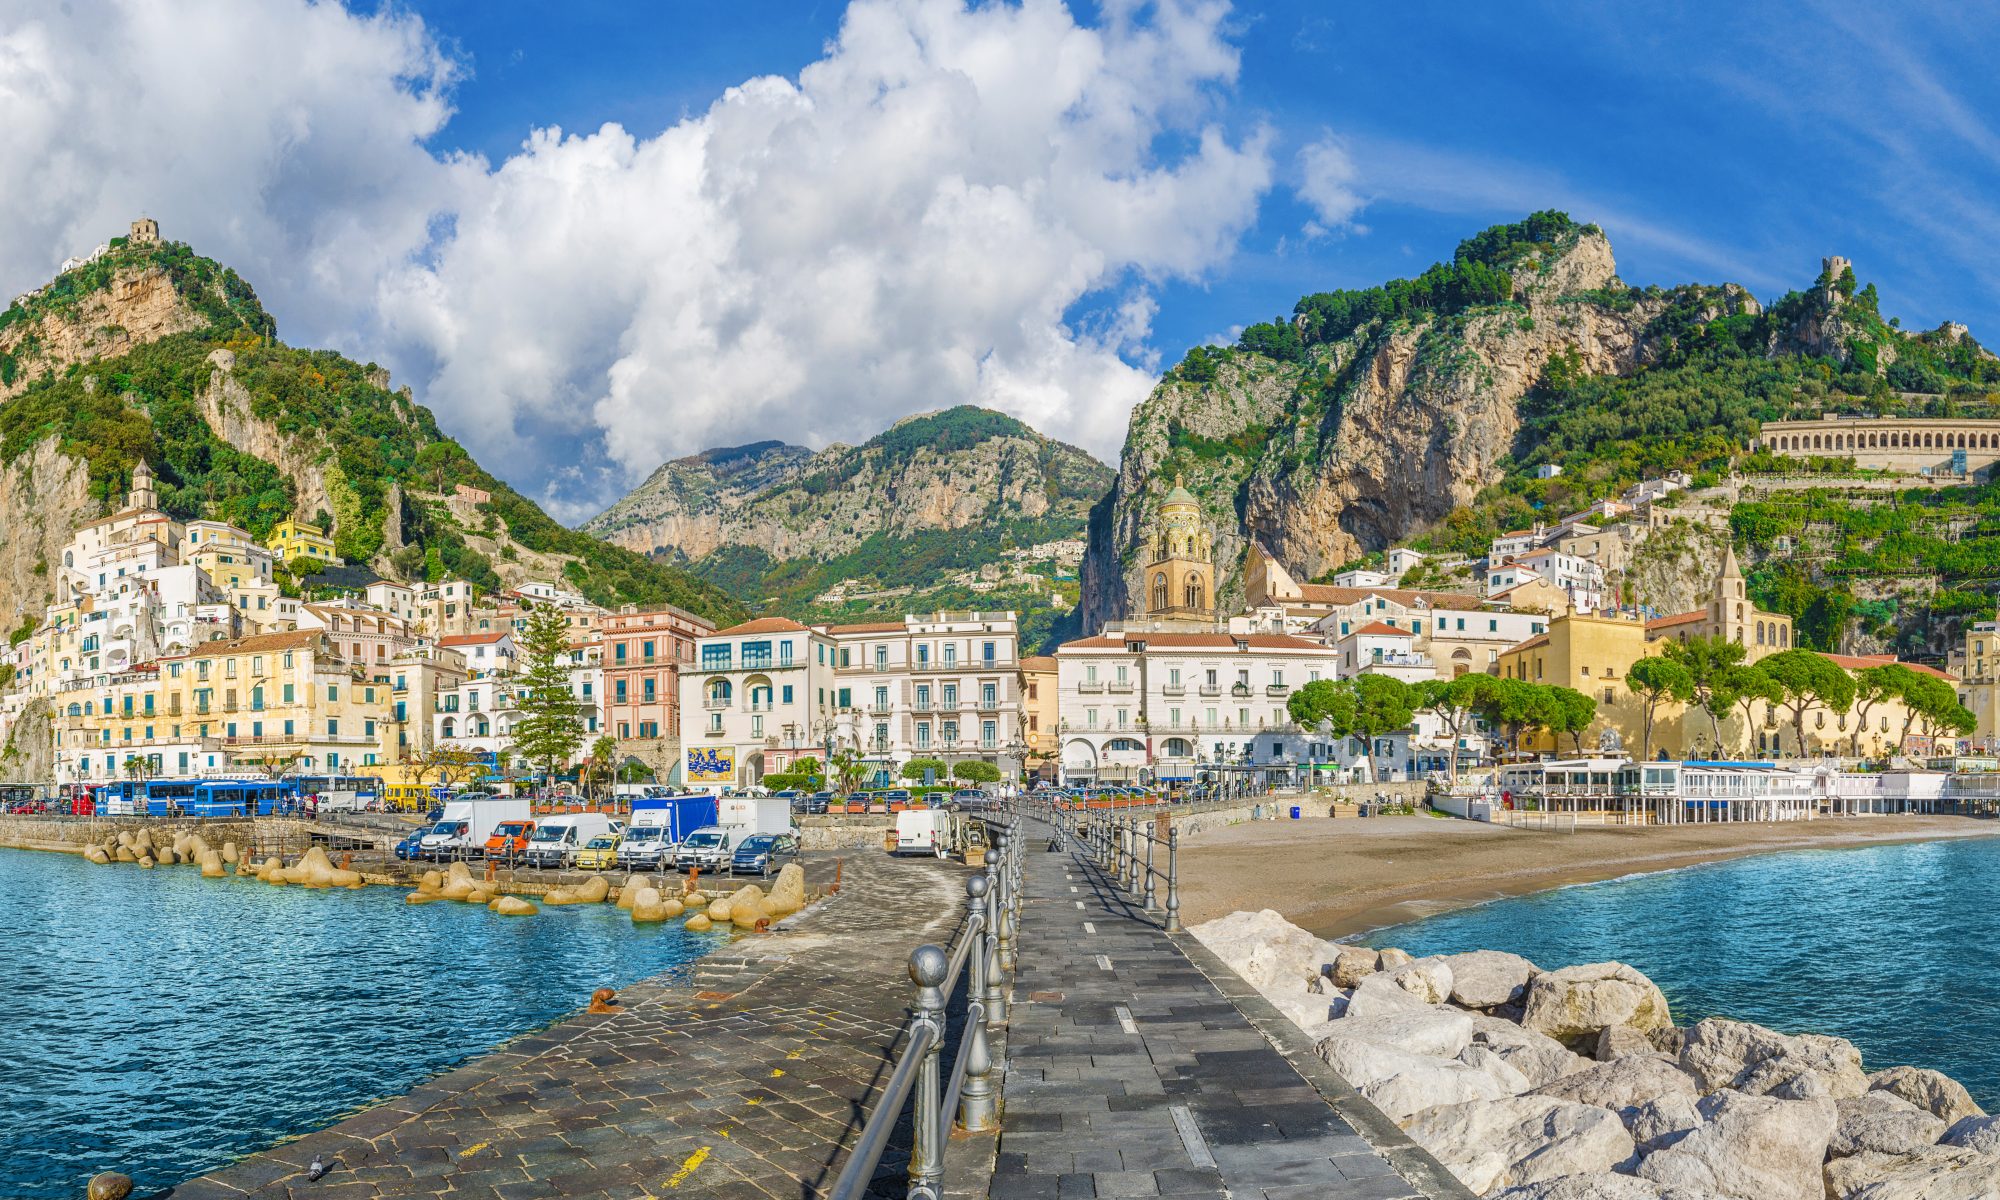 Paesaggio panoramico Costiera Amalfitana